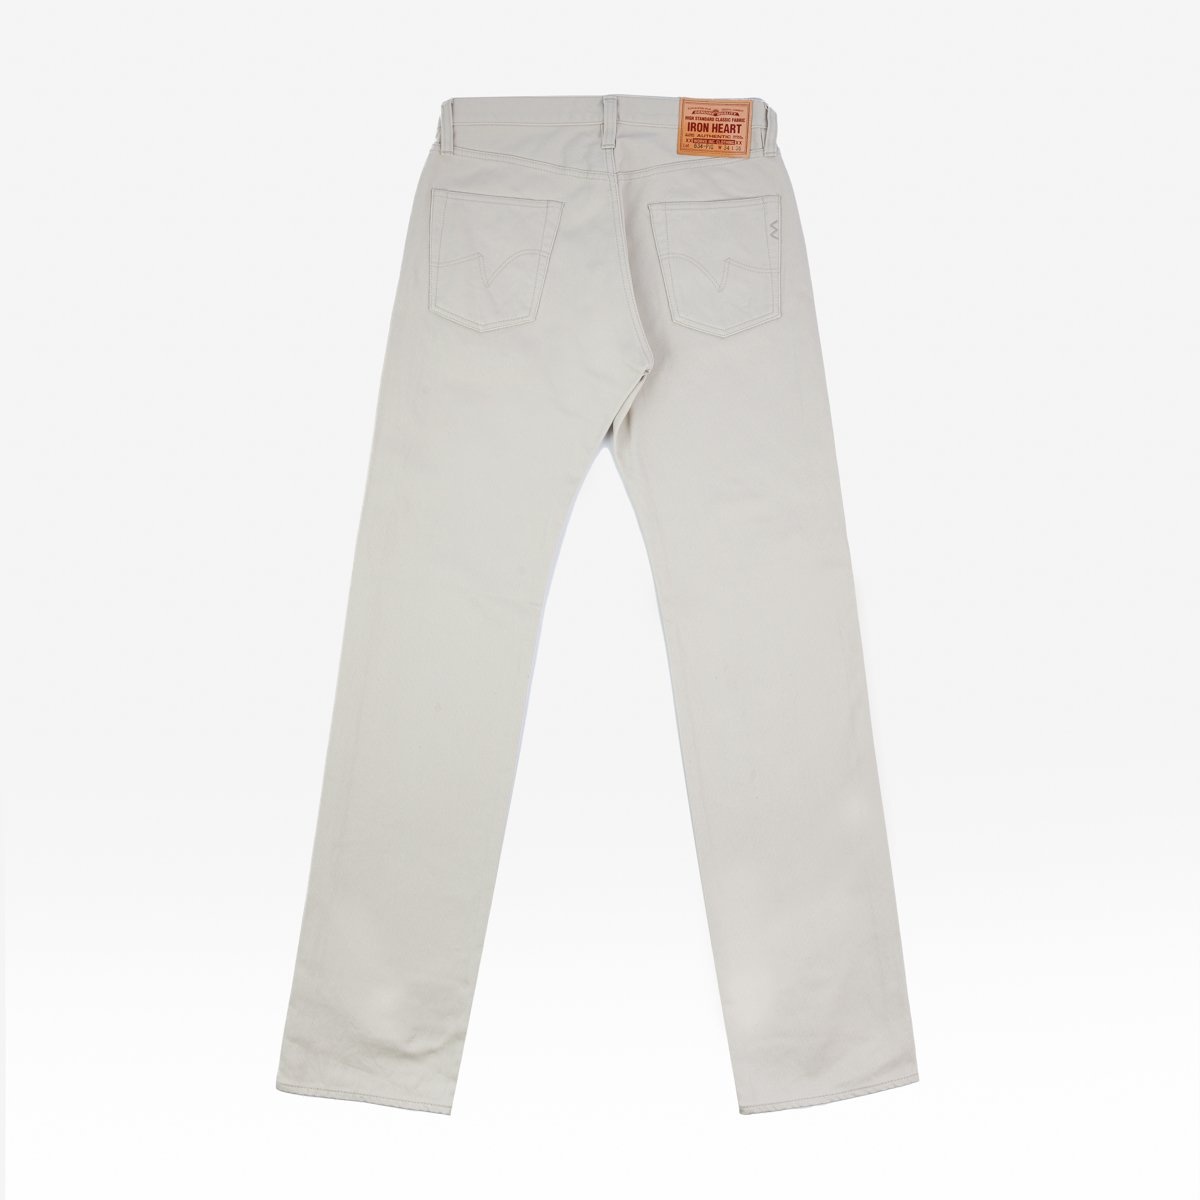 IH-634-PIQ 14oz Cotton Piqué Straight Cut Jeans - Ecru - 5